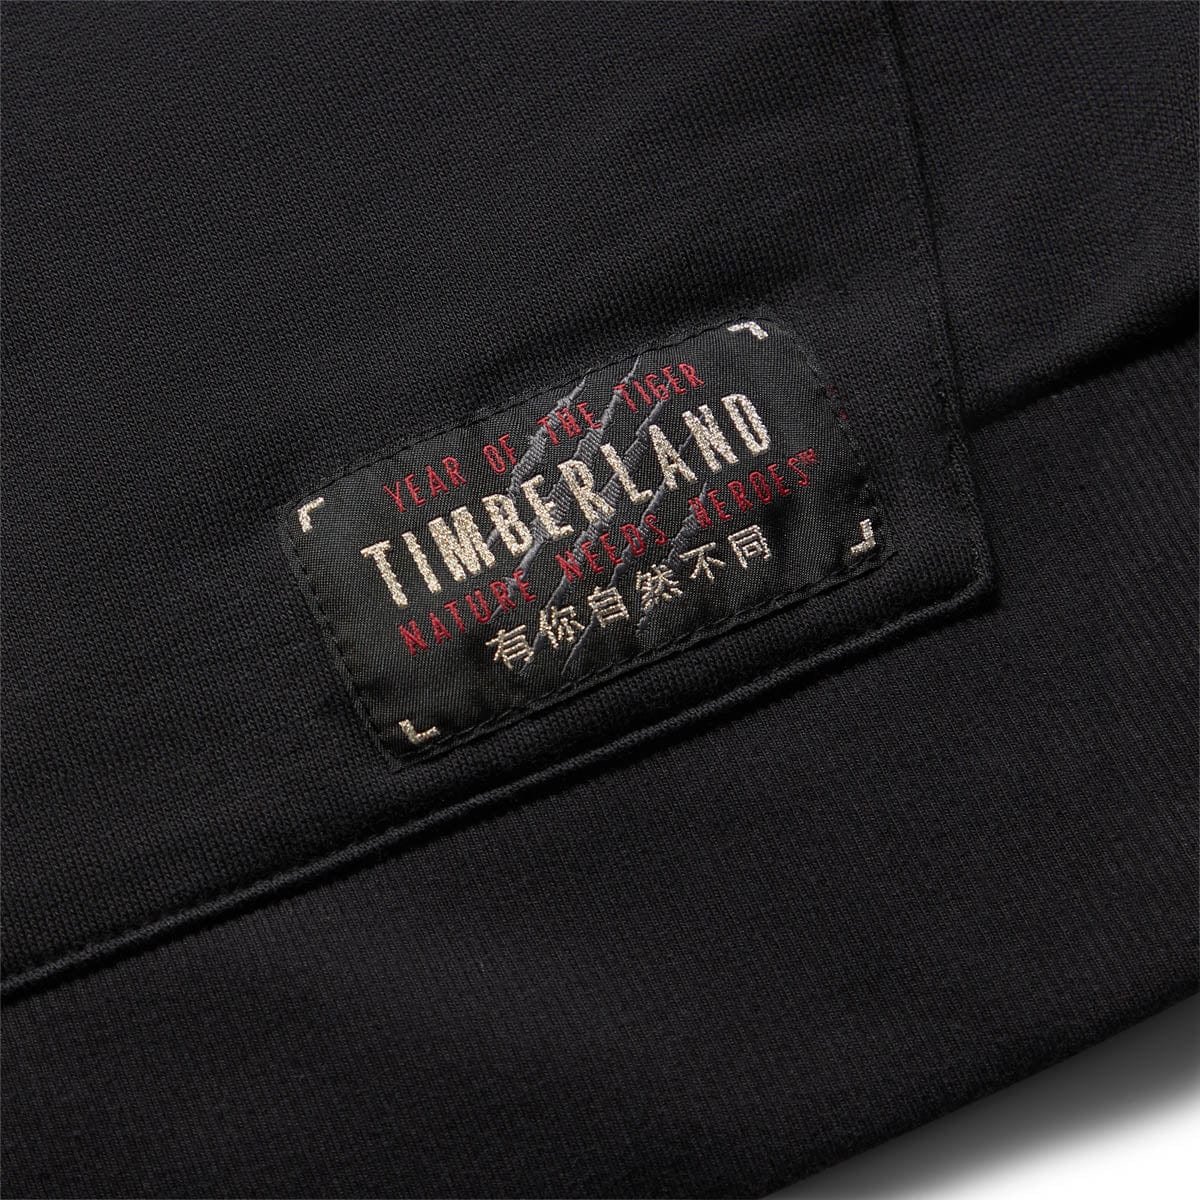 Timberland Hoodies & Sweatshirts LNY CREW NECK SWEATSHIRT